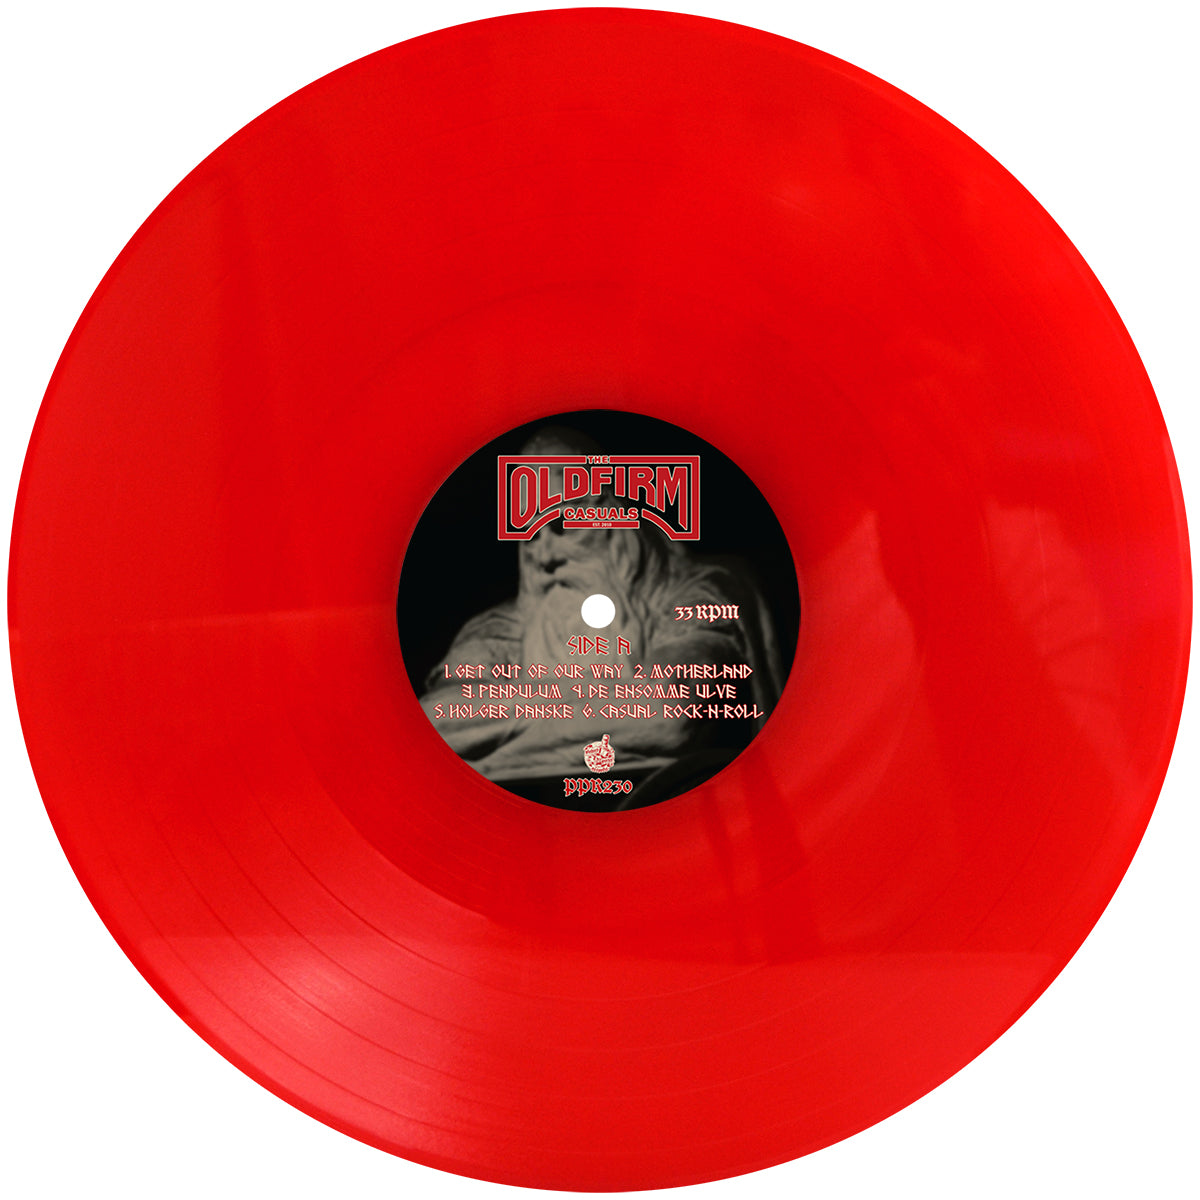 The Old Firm Casuals - Holger Danske Red Vinyl LP